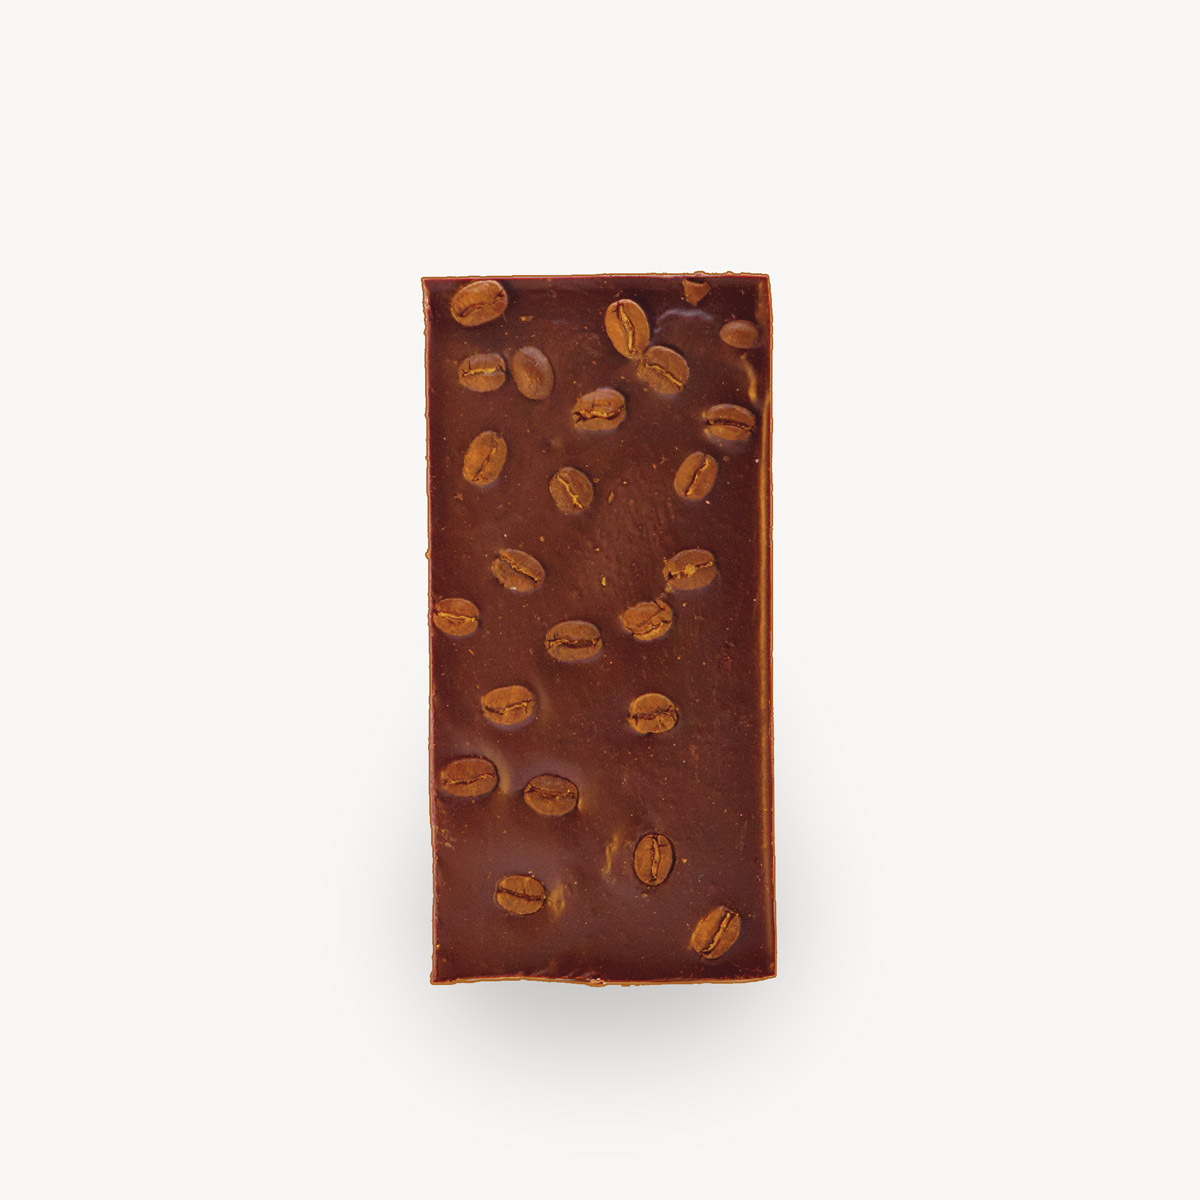 Σοκολάτα Cocooffee, φωτογραφία προϊόντος χωρίς το περιτύλιγμα.